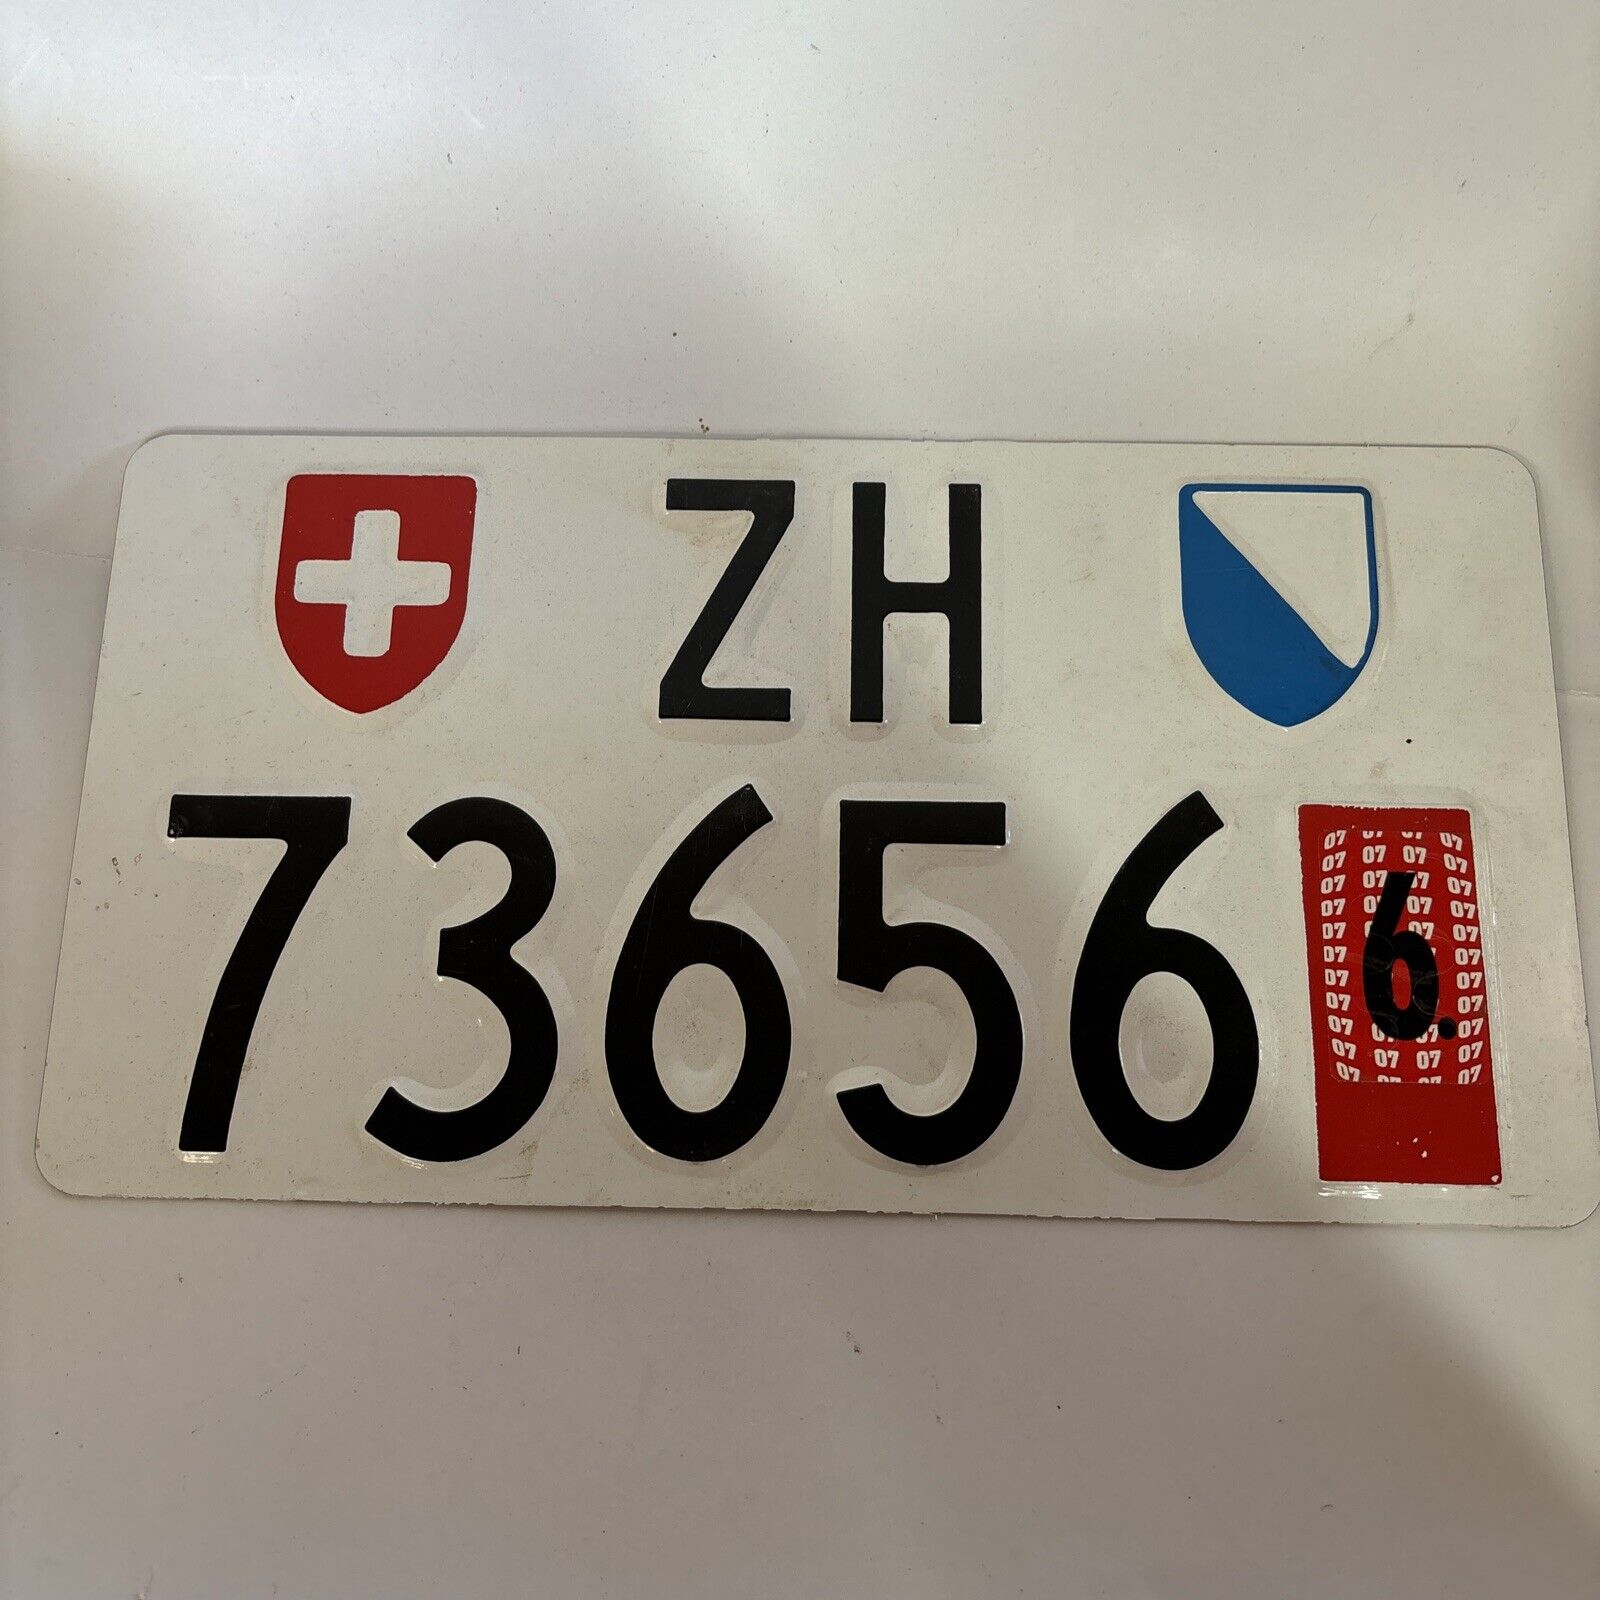 Zurich Canton Switzerland License Plate ZH 73656